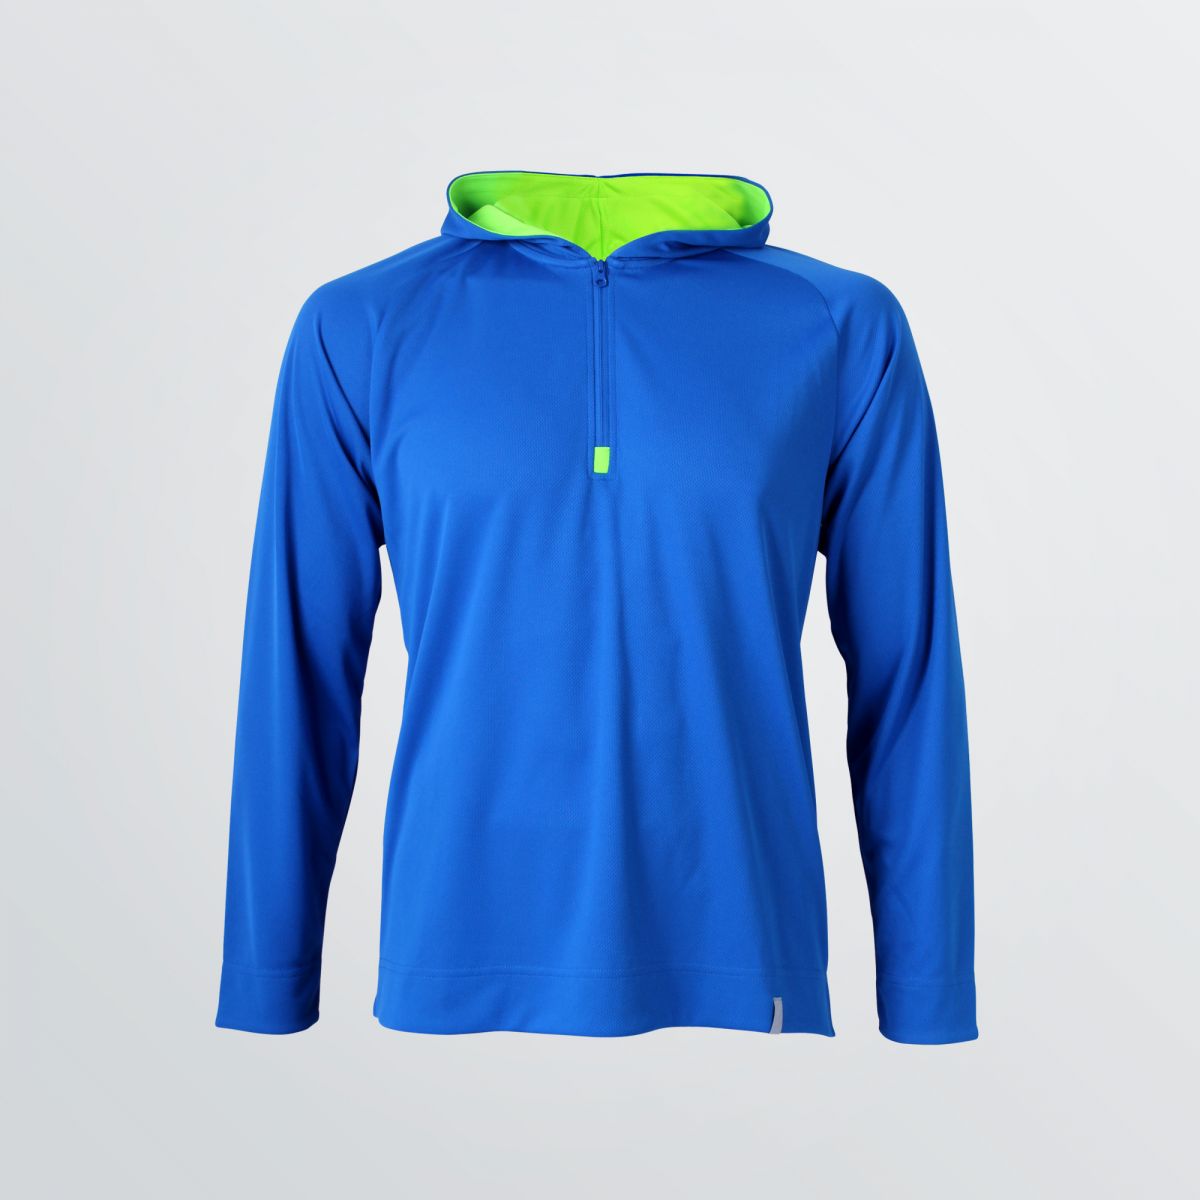 Sportliches Basic Tech Hoody mit Halfzipper zum Individualisieren abgebildet als Beispielprodukt in blau - Frontansicht